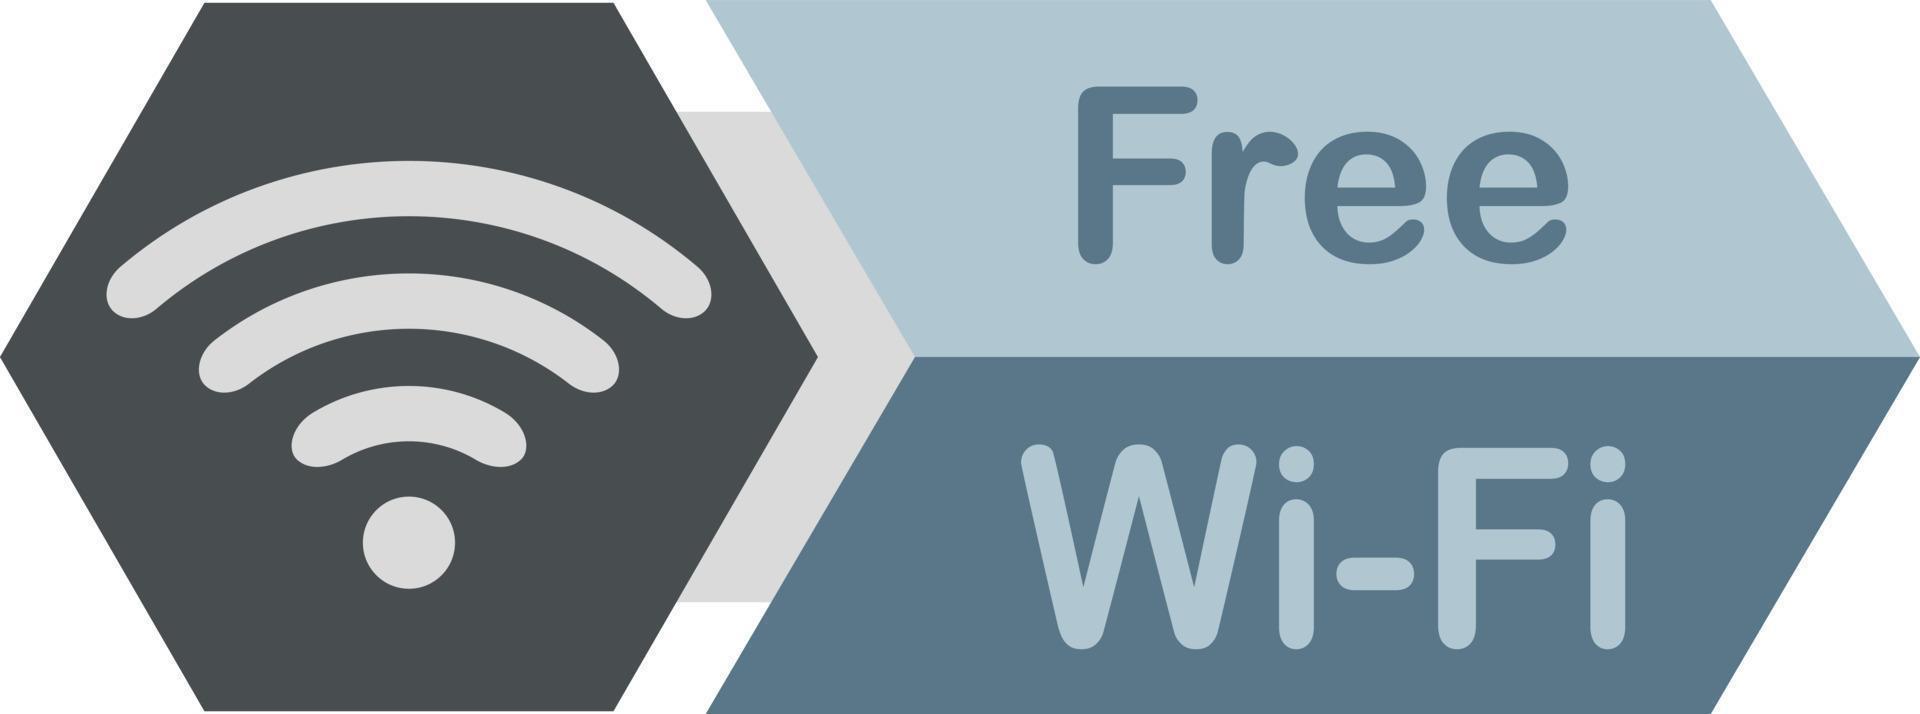 icône wi-fi gratuite de style plat. symbole de réseau pour la connexion internet. vecteur